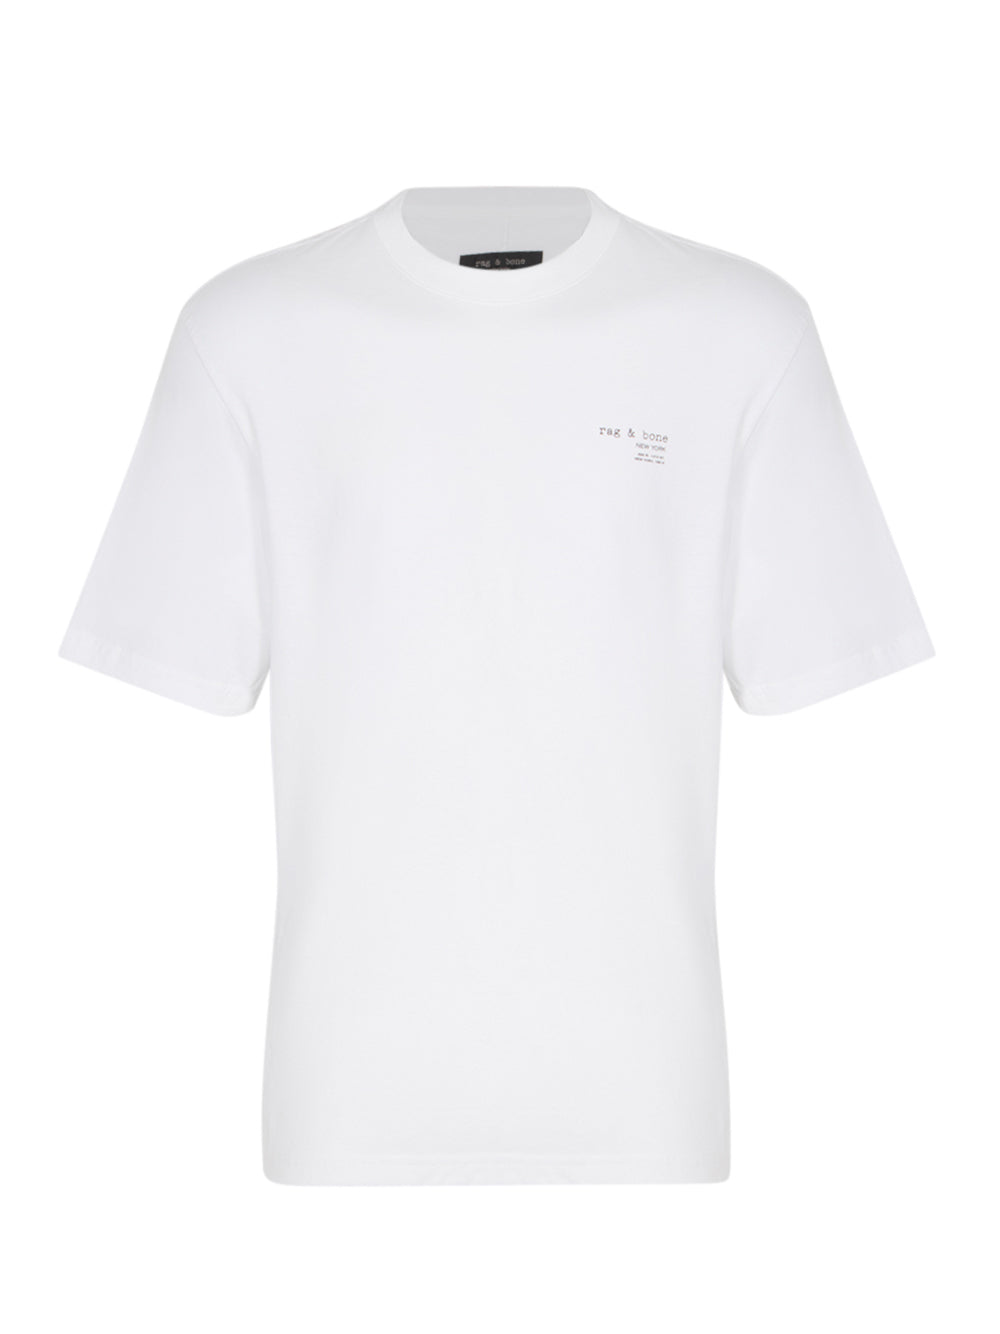 425 logo-print cotton T-shirt (White)